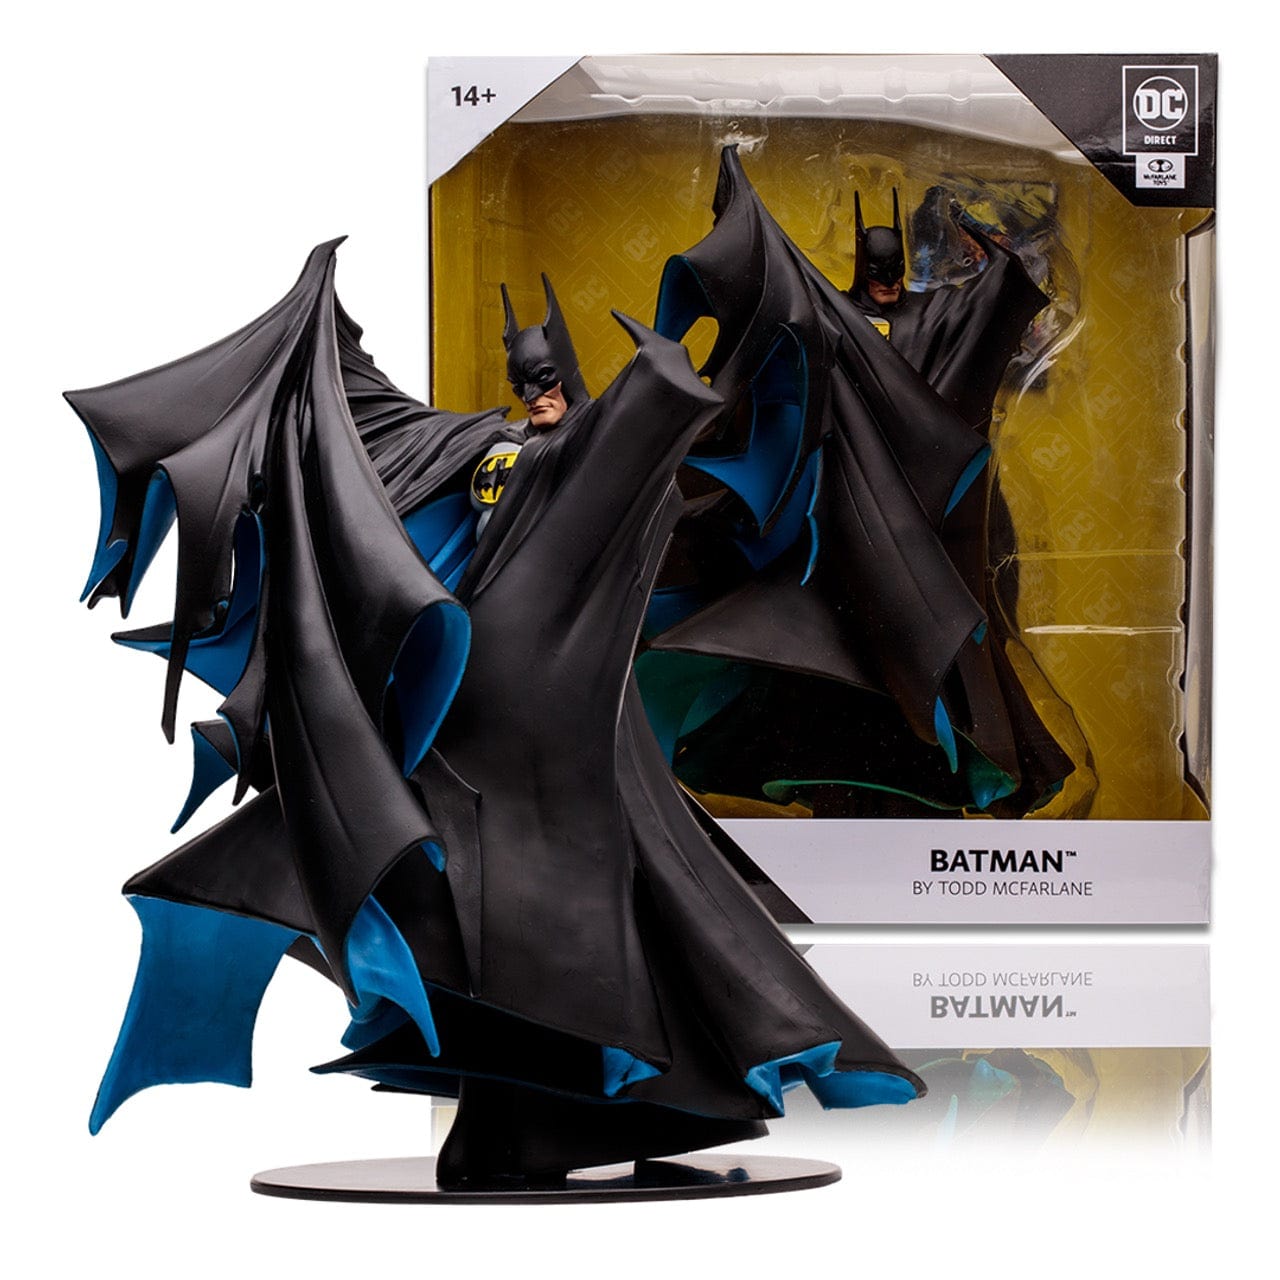 McFarlane Toys DC Direct Batman by Todd McFarlane 1:8 Scale Statue (Black)